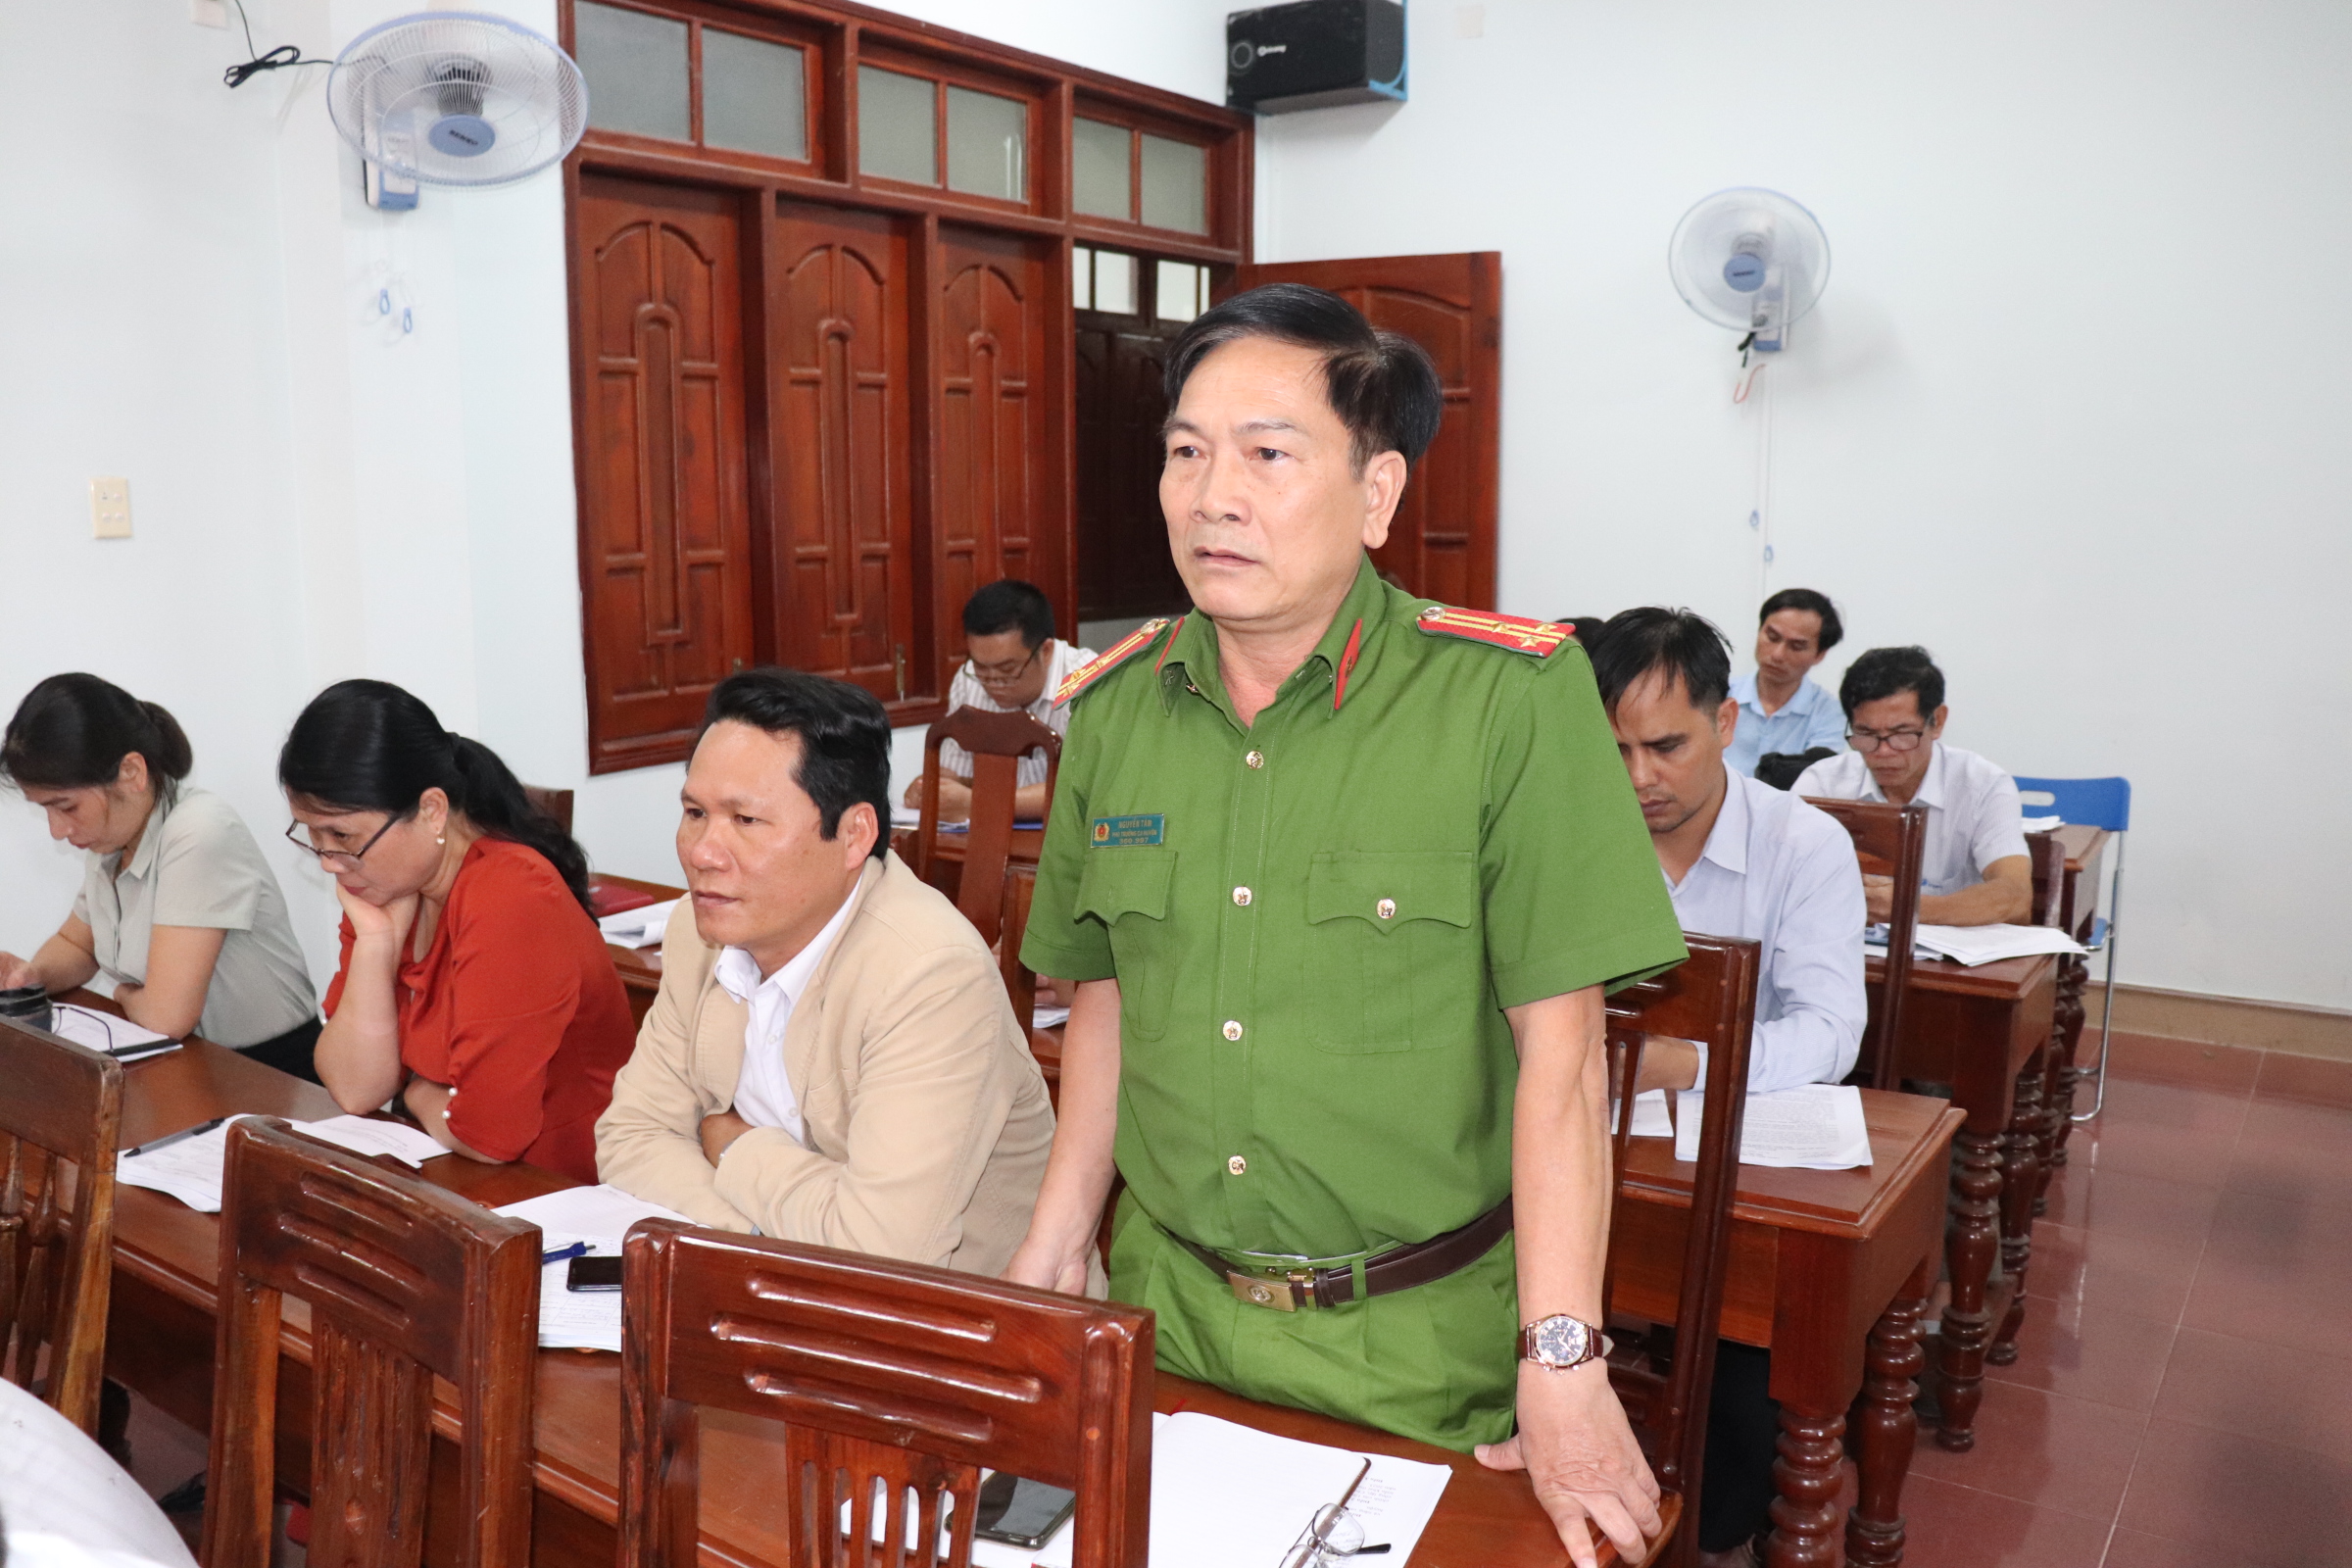 Thượng tá Nguyễn Tám – Phó Trưởng Công an huyện Ba Tơ phát biểu về vai trò của chuyển đổi số trong công tác cải cách hành chính